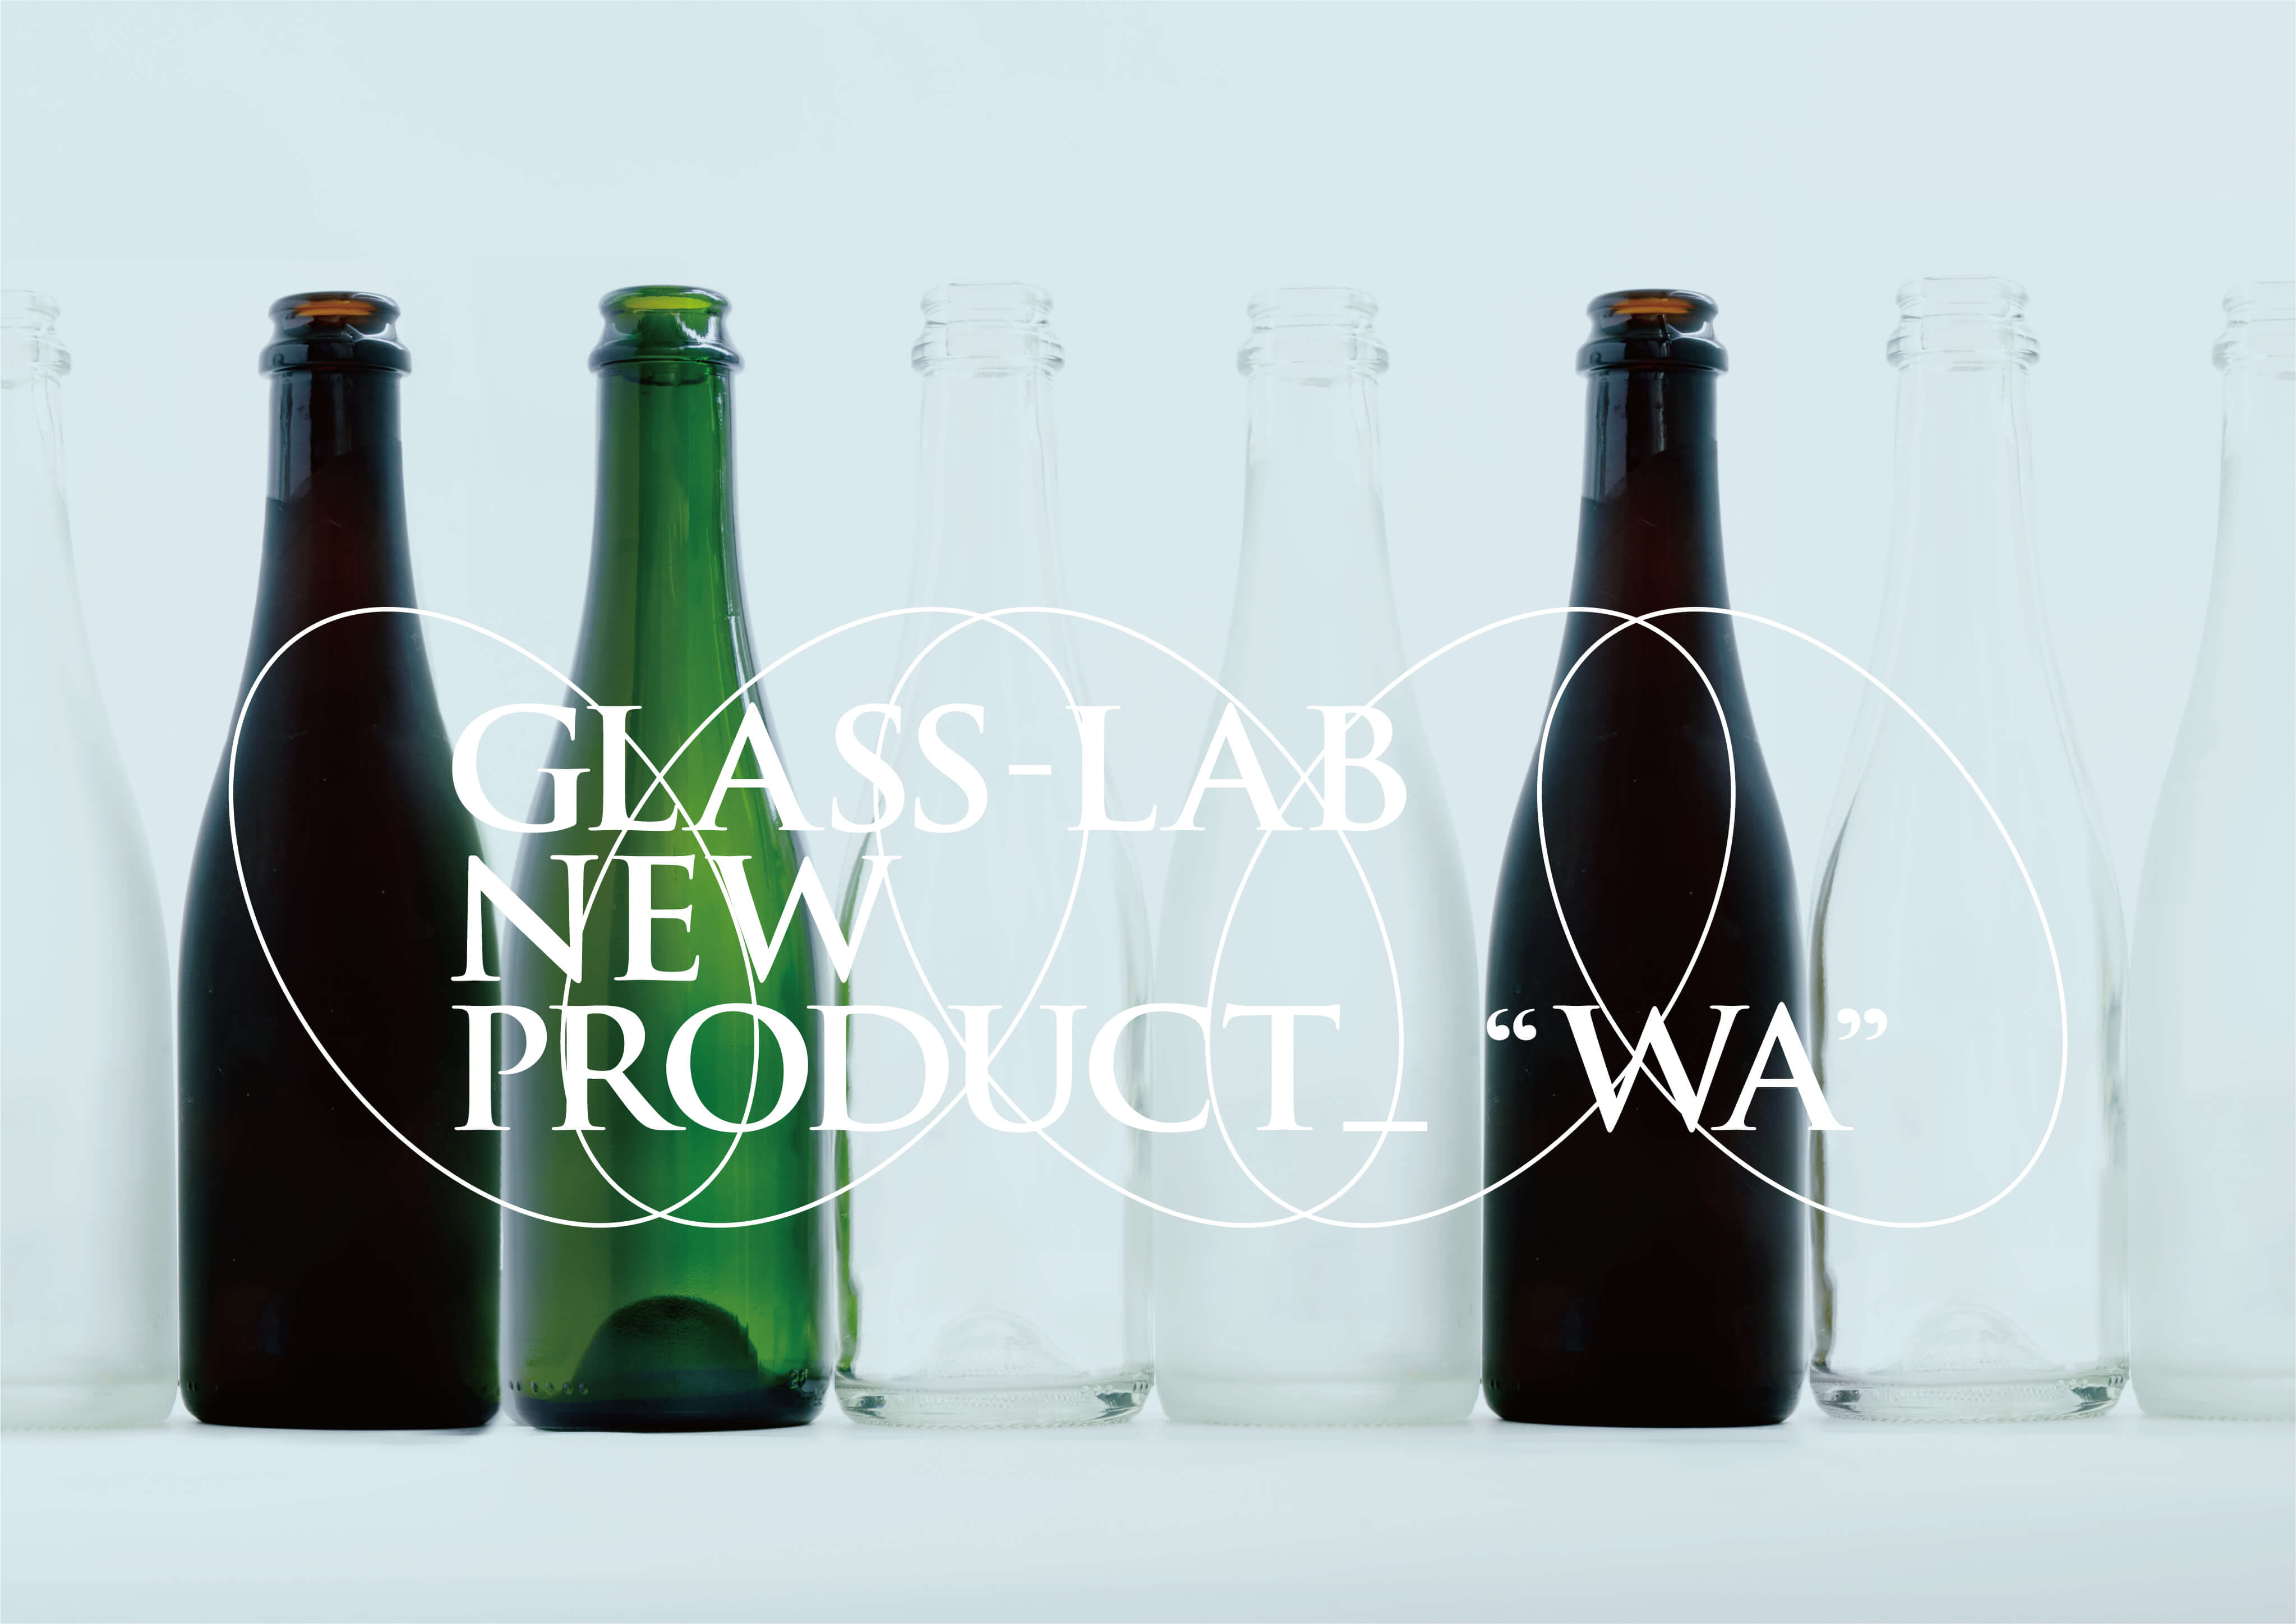 GLASS-LAB NEW PRODUCT “WA”1